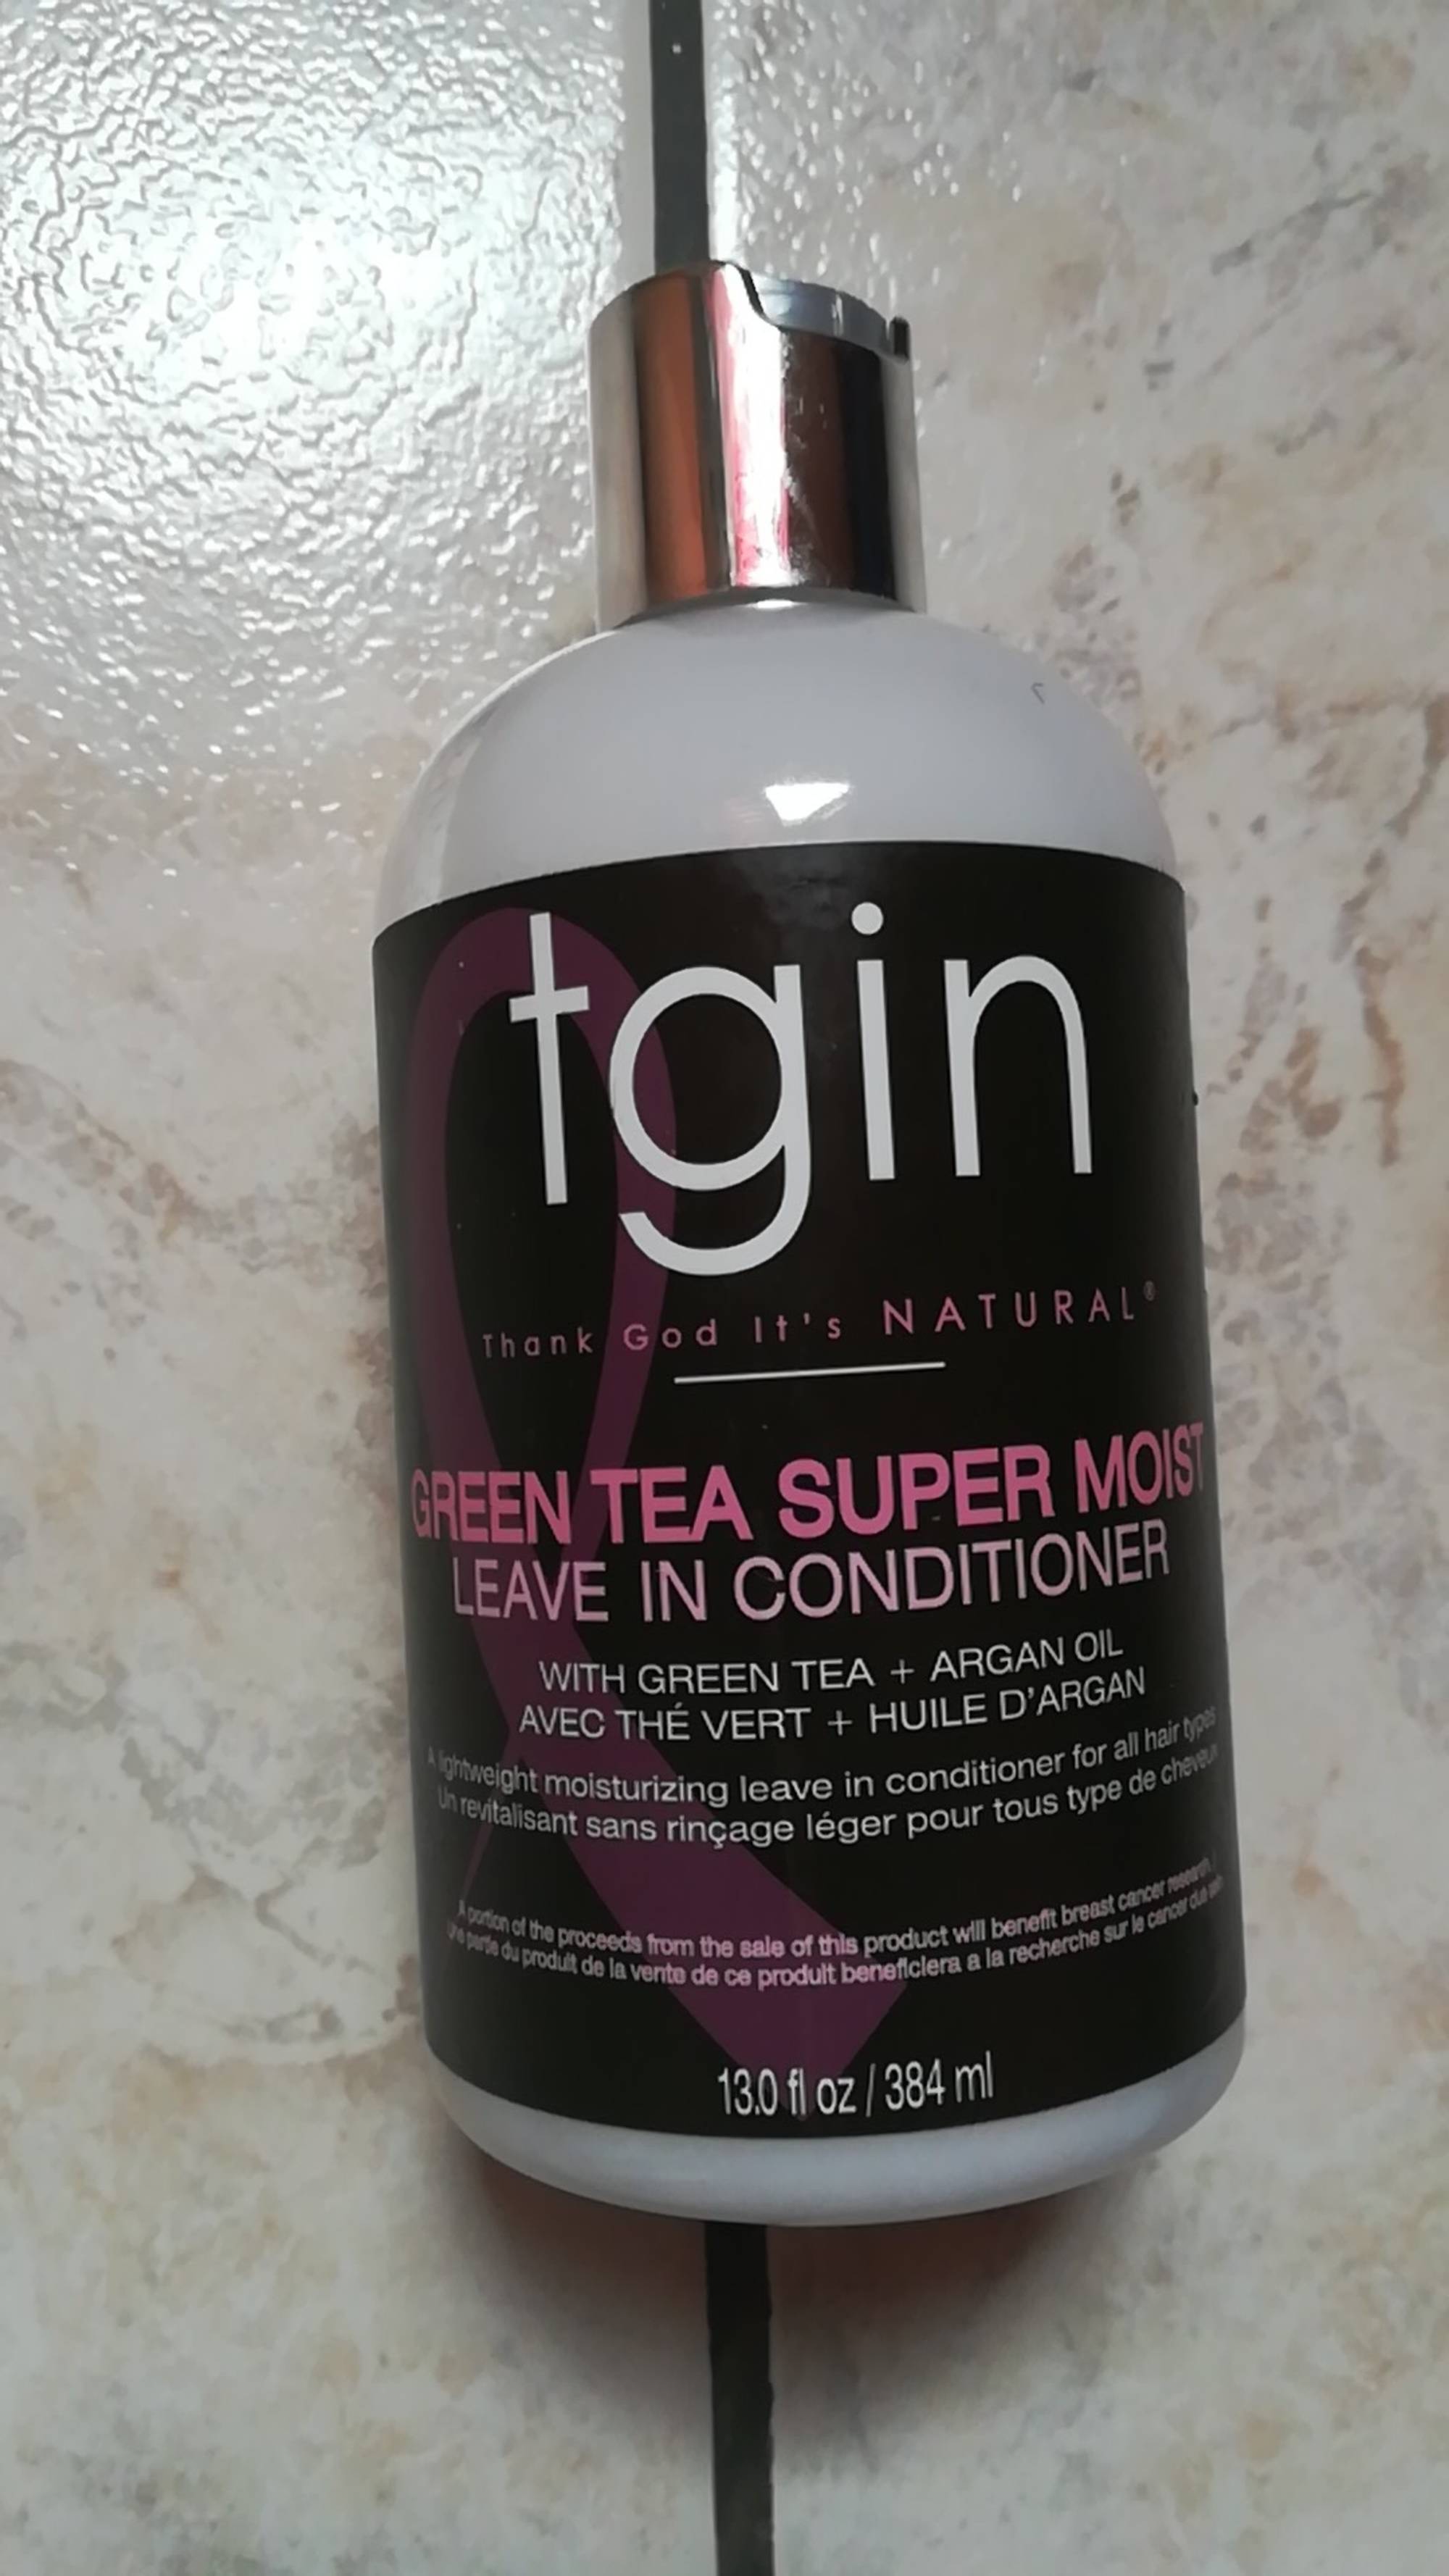 TGIN - Green tea super moist - Leave in conditioner